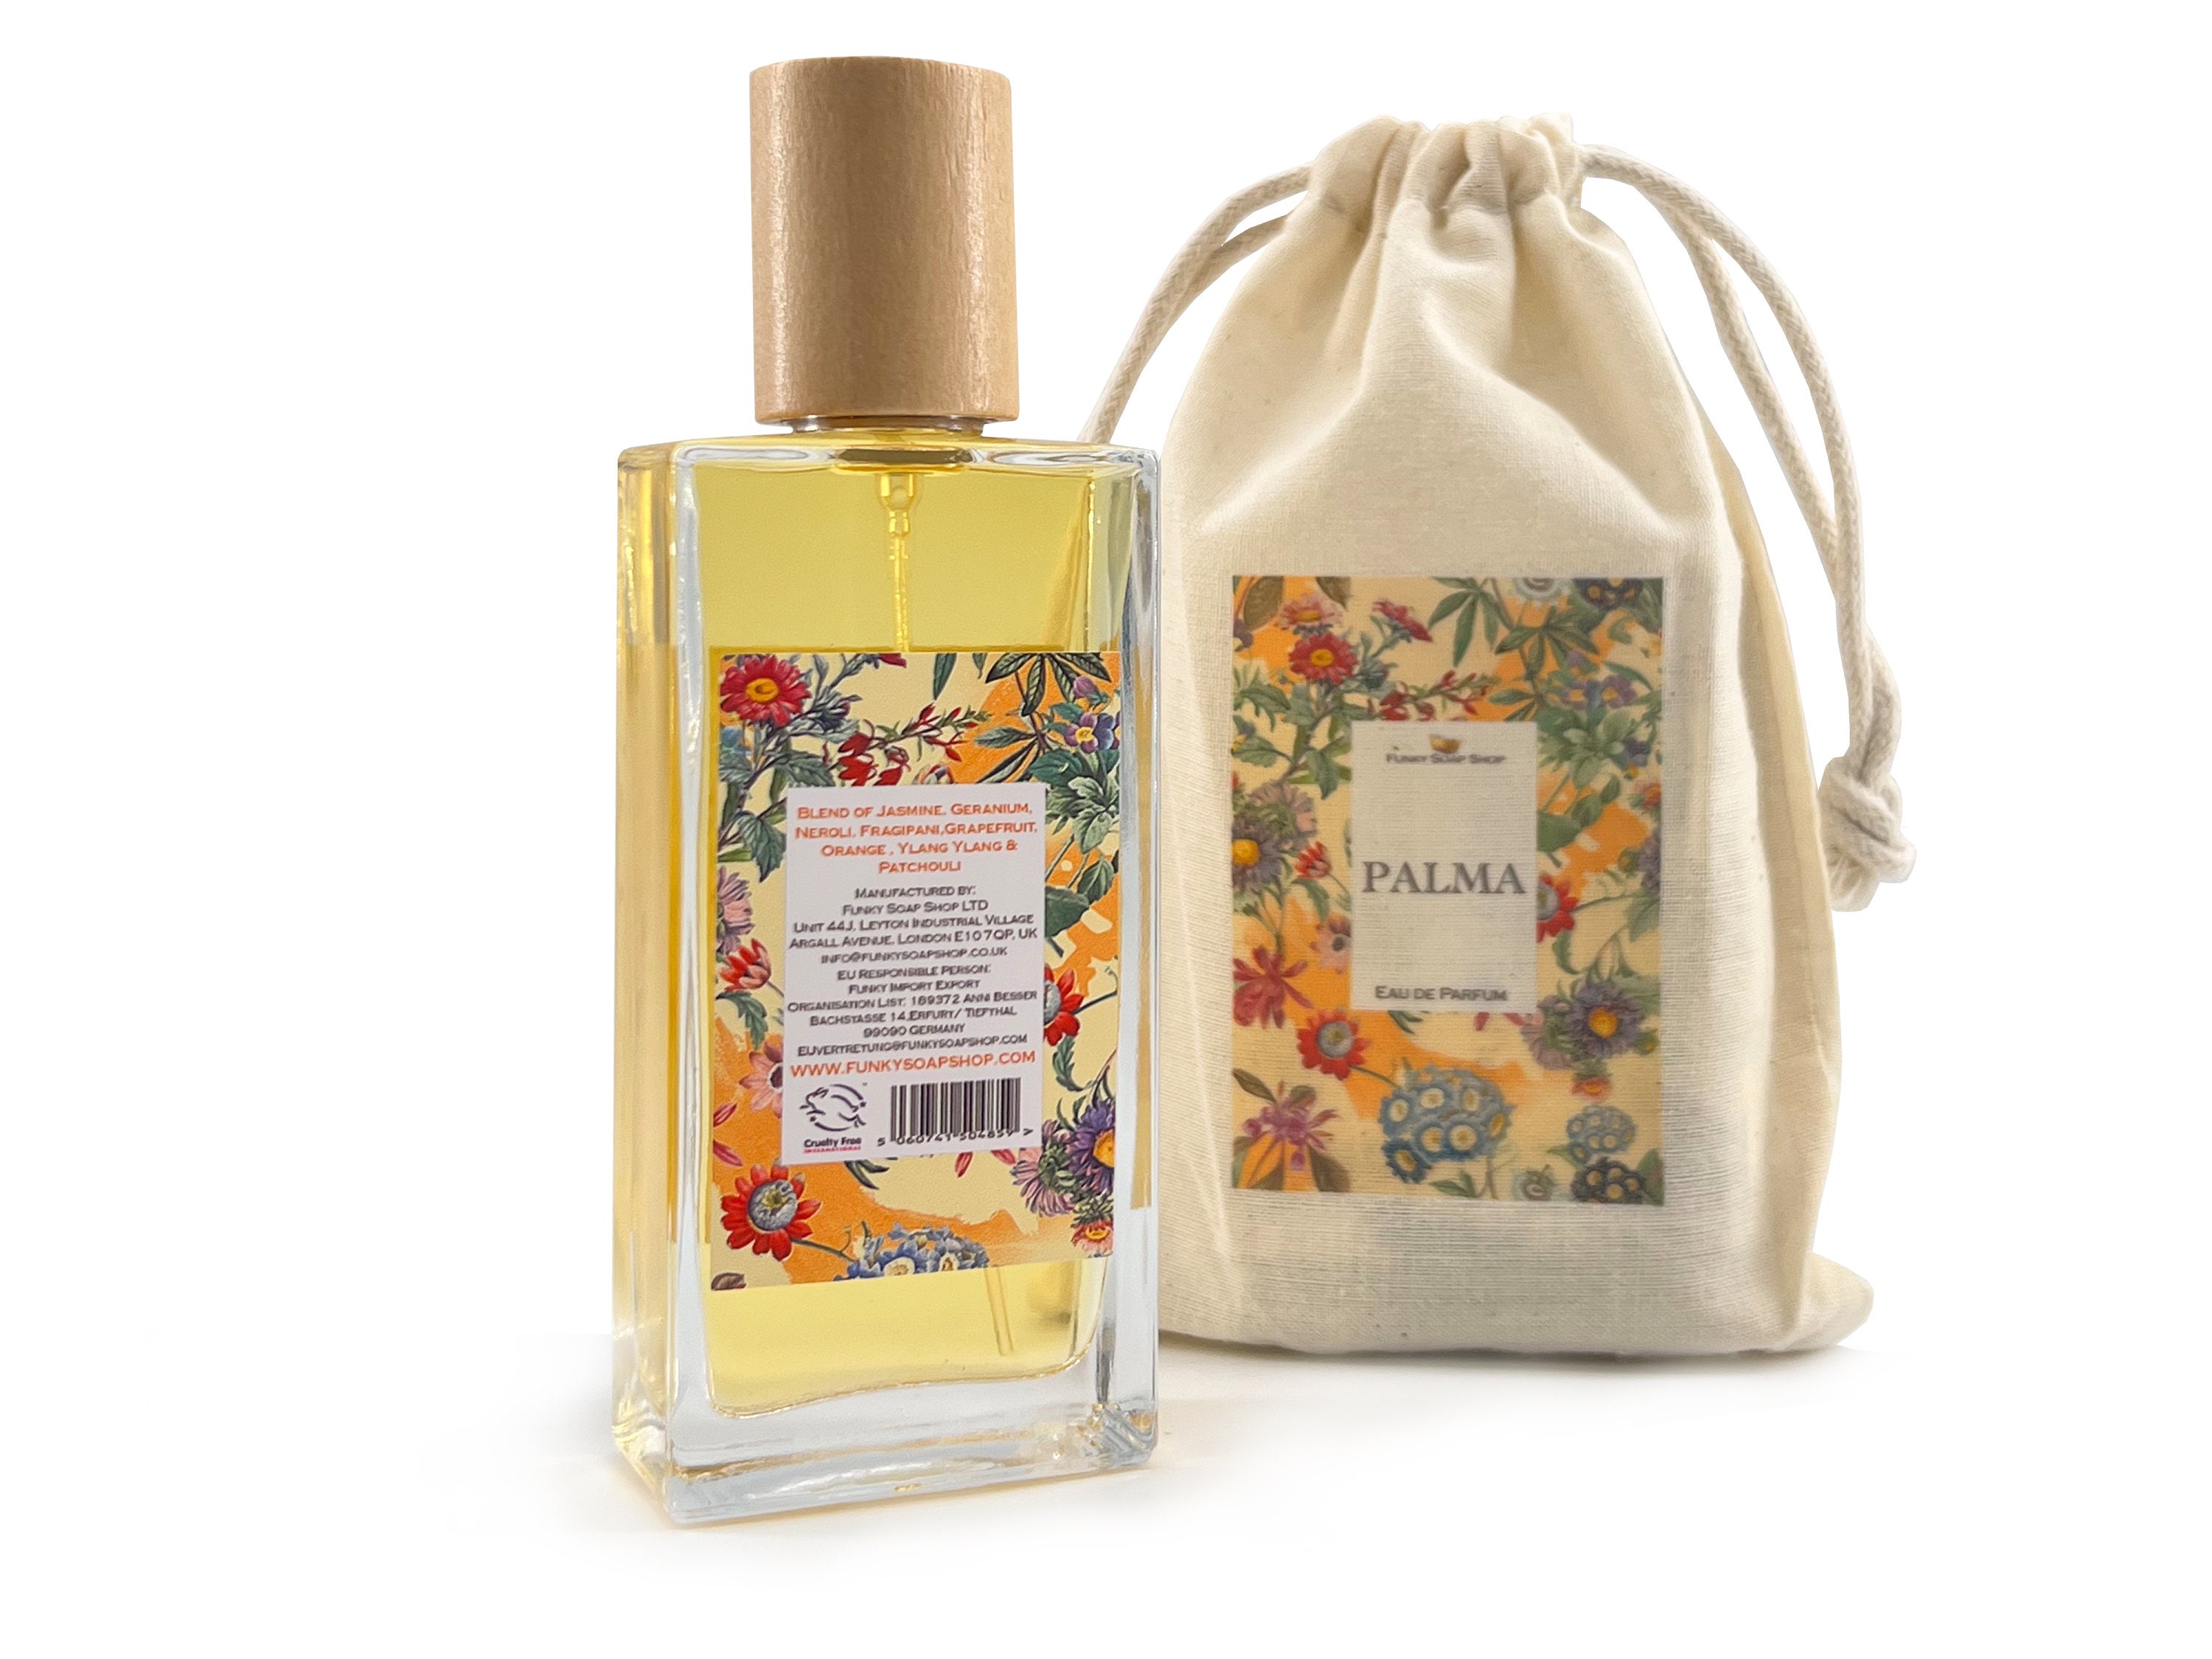  Layali for Women EDP - Eau de Parfum 50ML(1.7 oz), Arabian  Perfumery, Fruity Blend of Black Currant, Plum, Orange Blossom w/Subtle  Notes of Jasmine, Everyday Essential